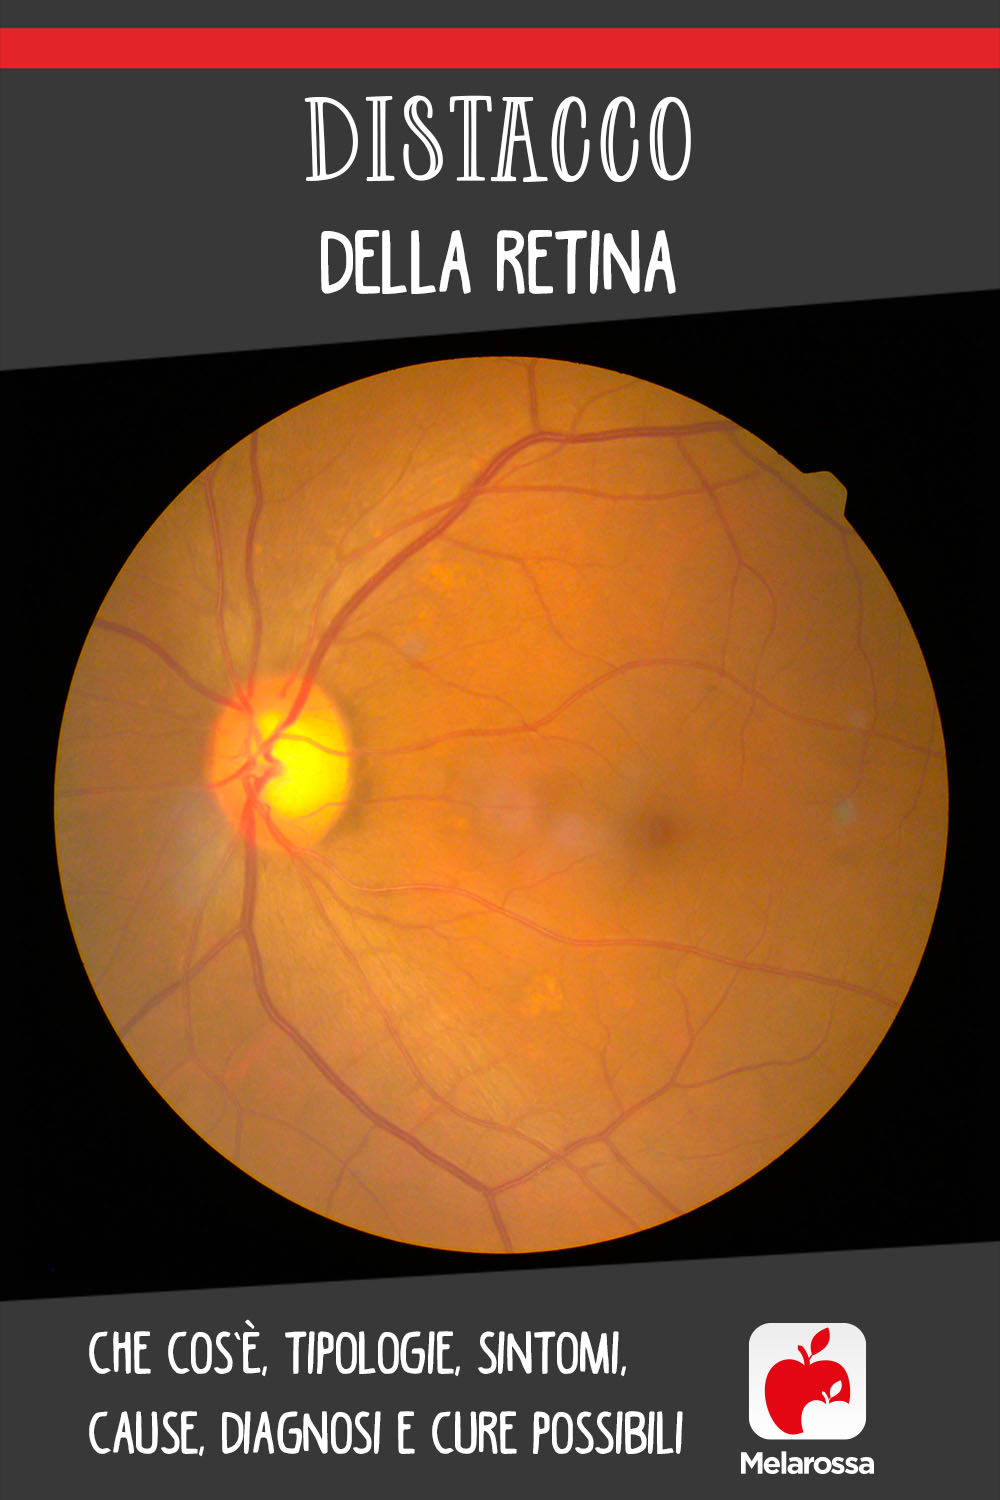 distacco della retina: cos'è, cause, sintomi e cure 